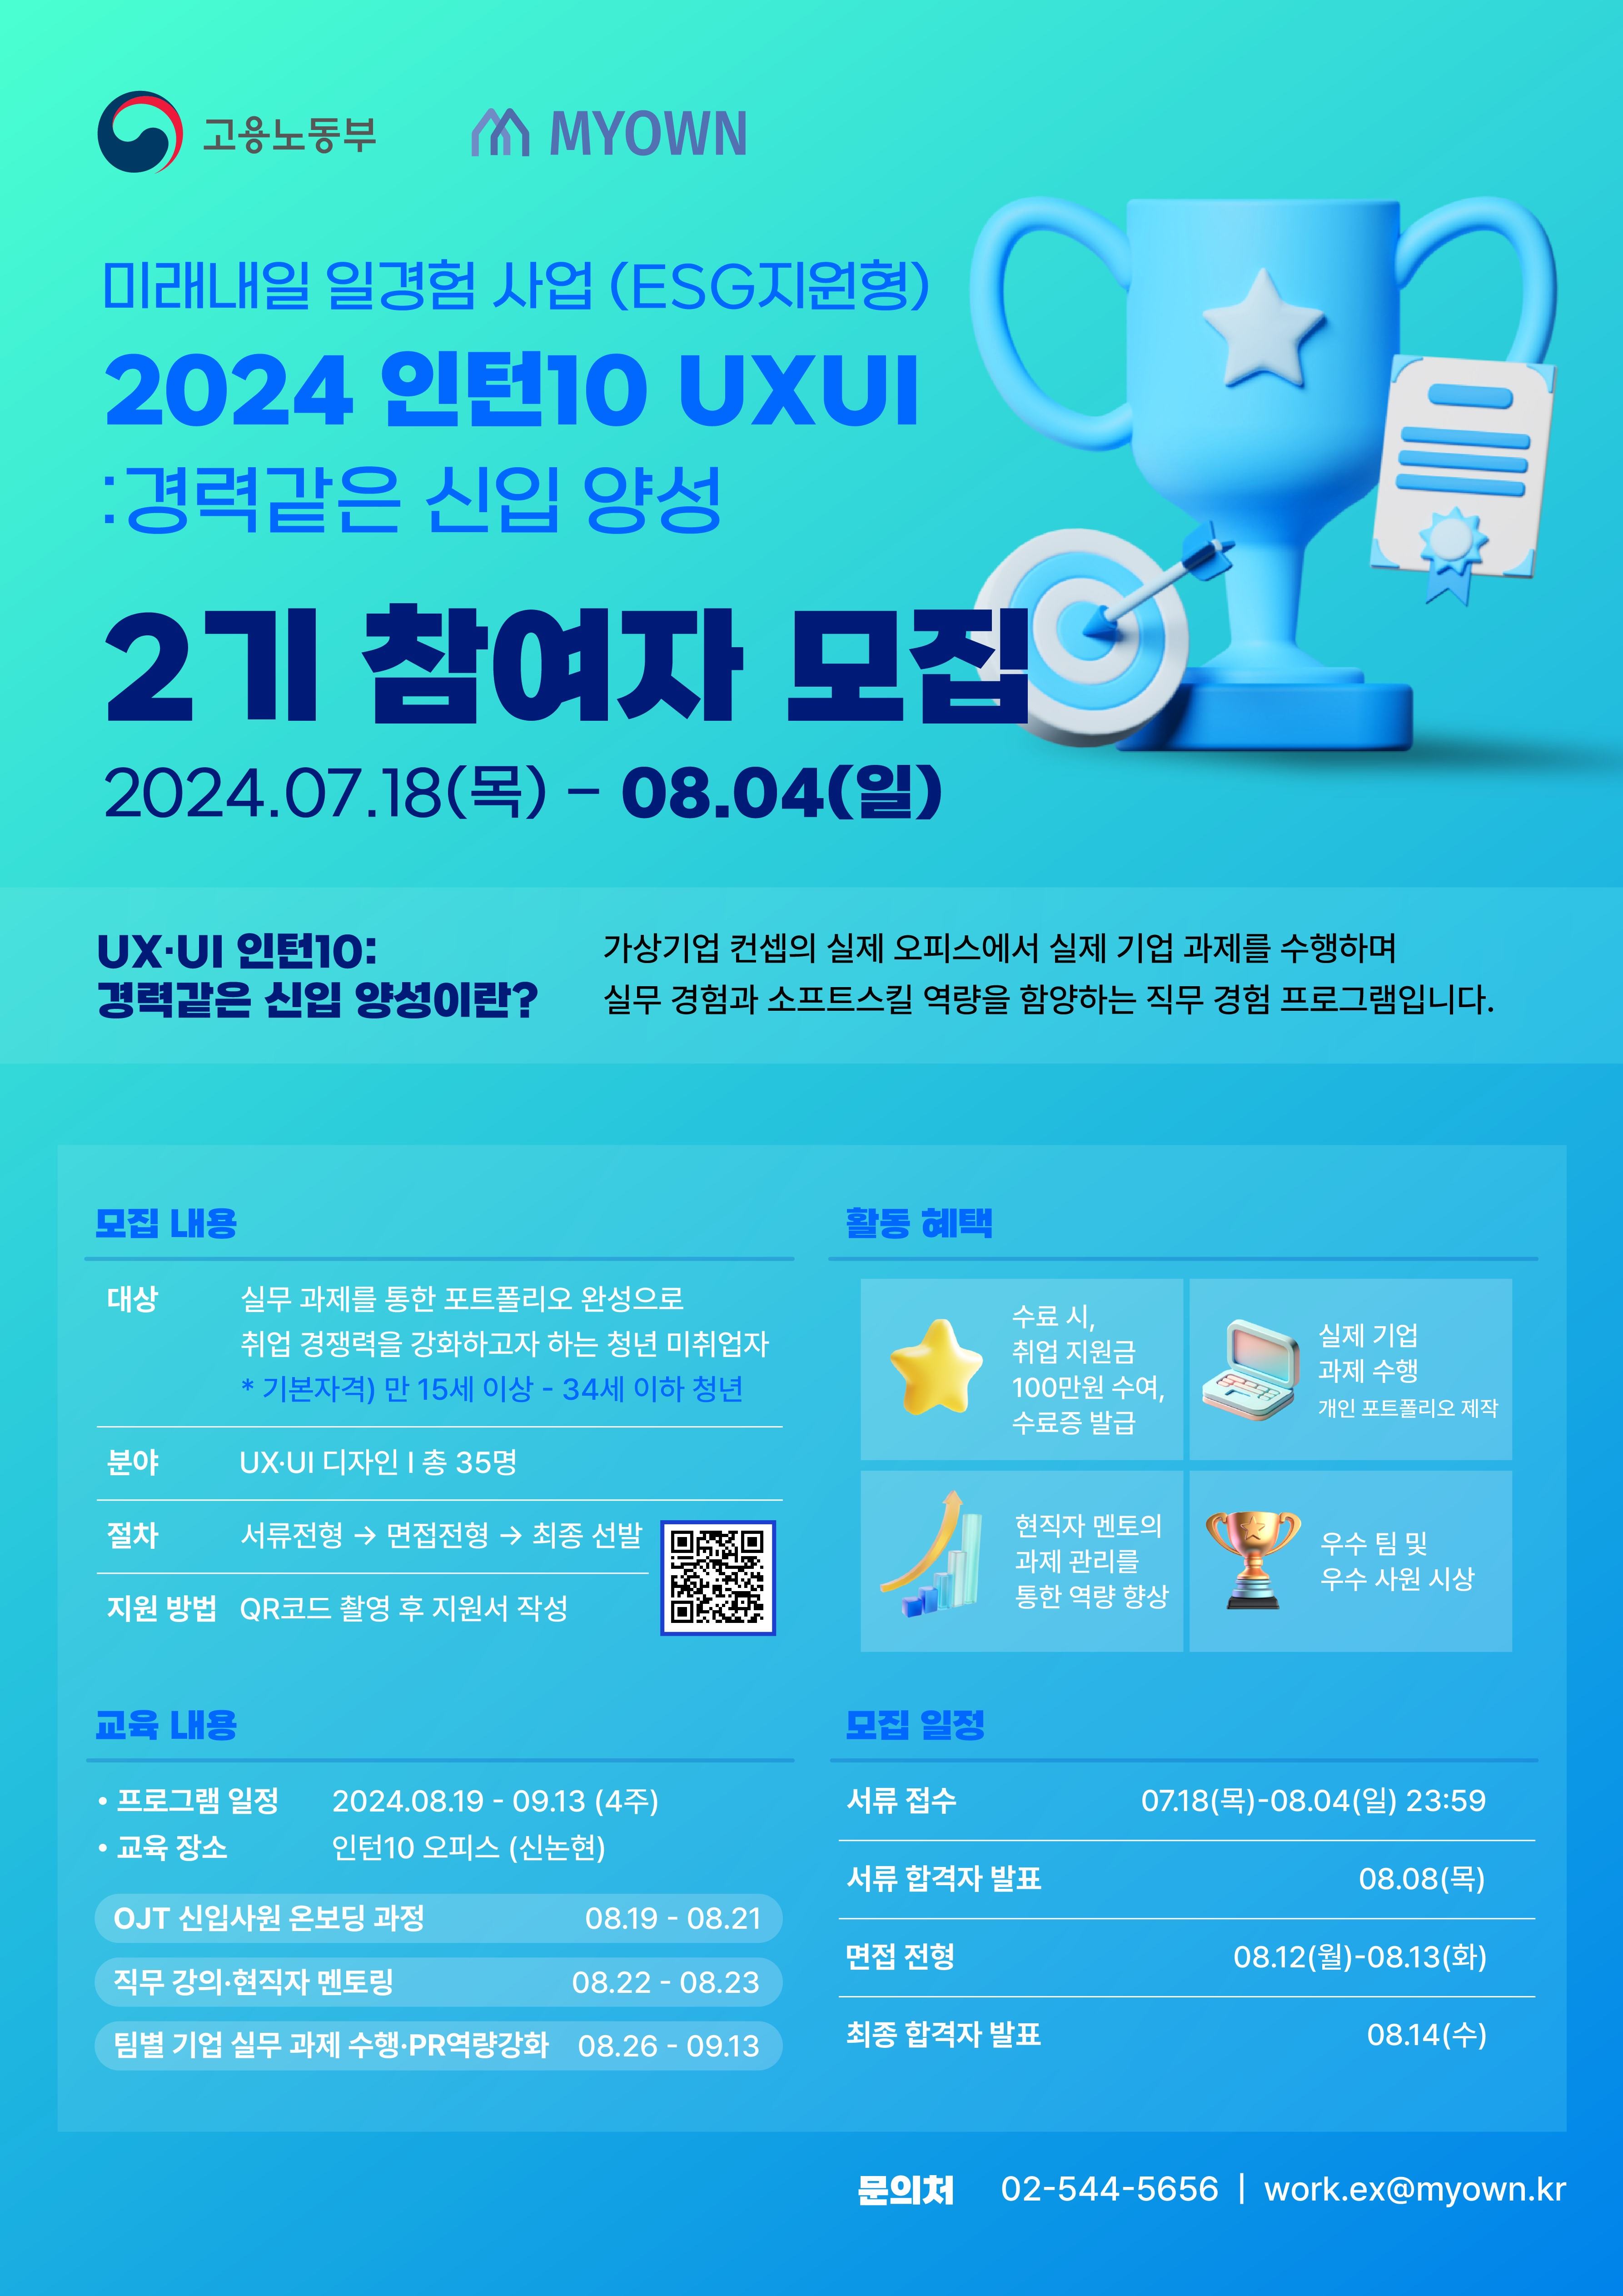 미래내일 일경험 사업 '2024 인턴10 UXUI : 경력같은 신입 양성' 2기 참여자 모집